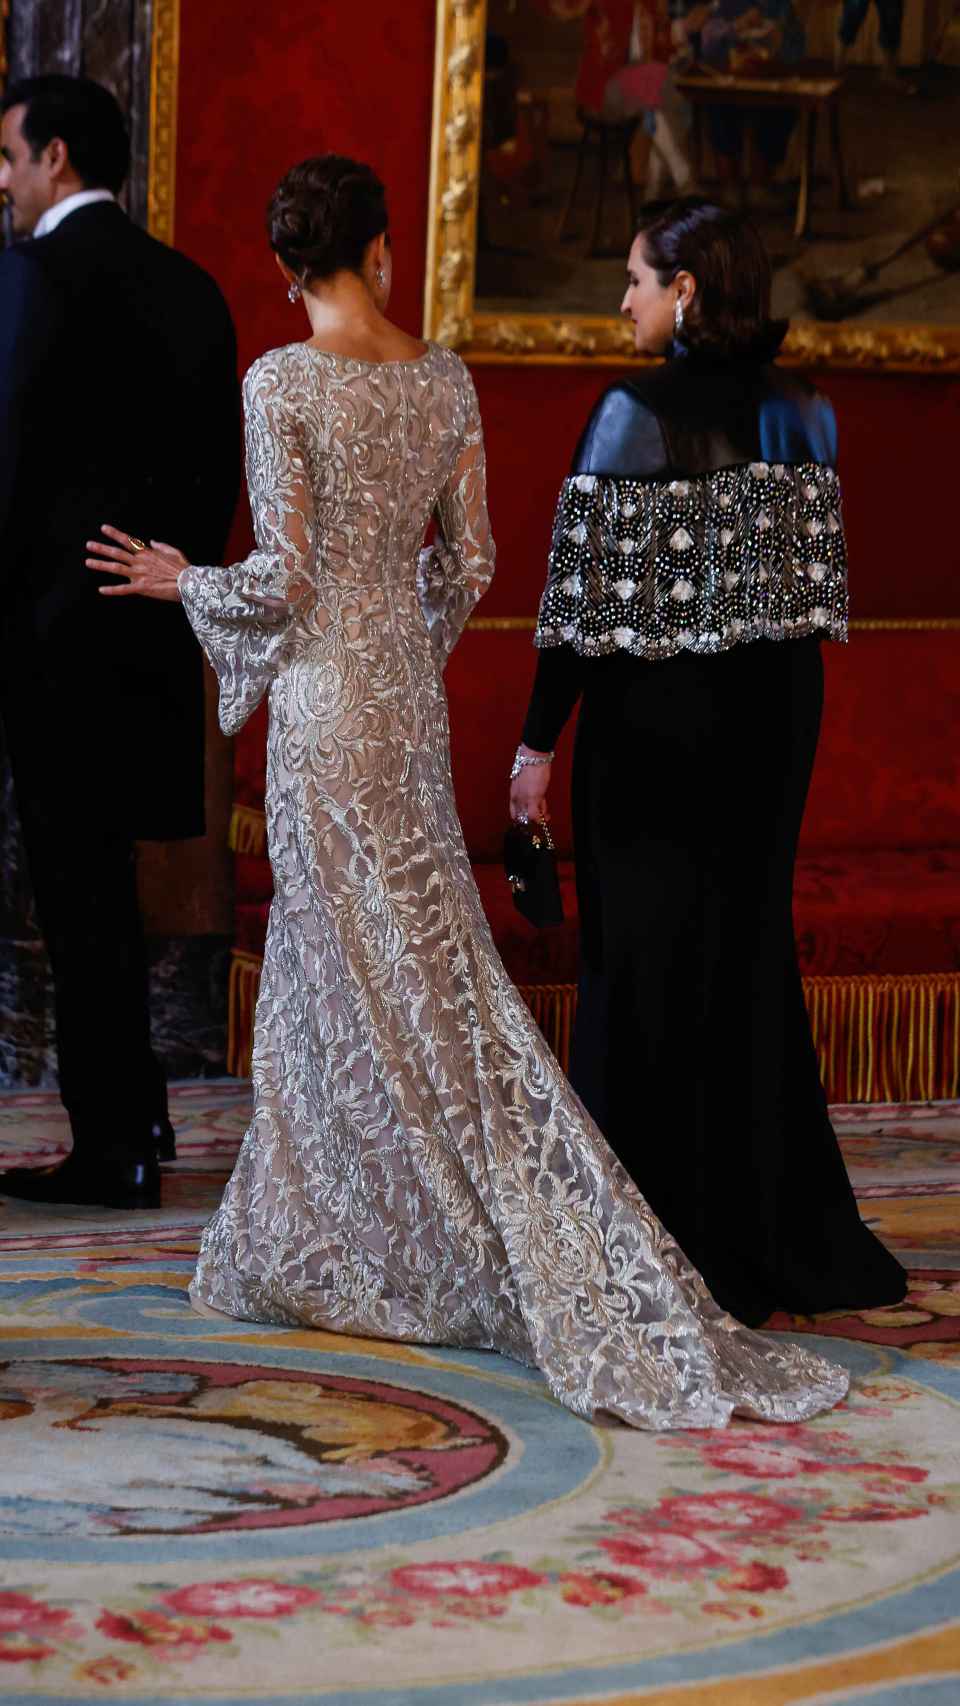 La reina Letizia luciendo su vestido dorado con brocados y manga acampanada.